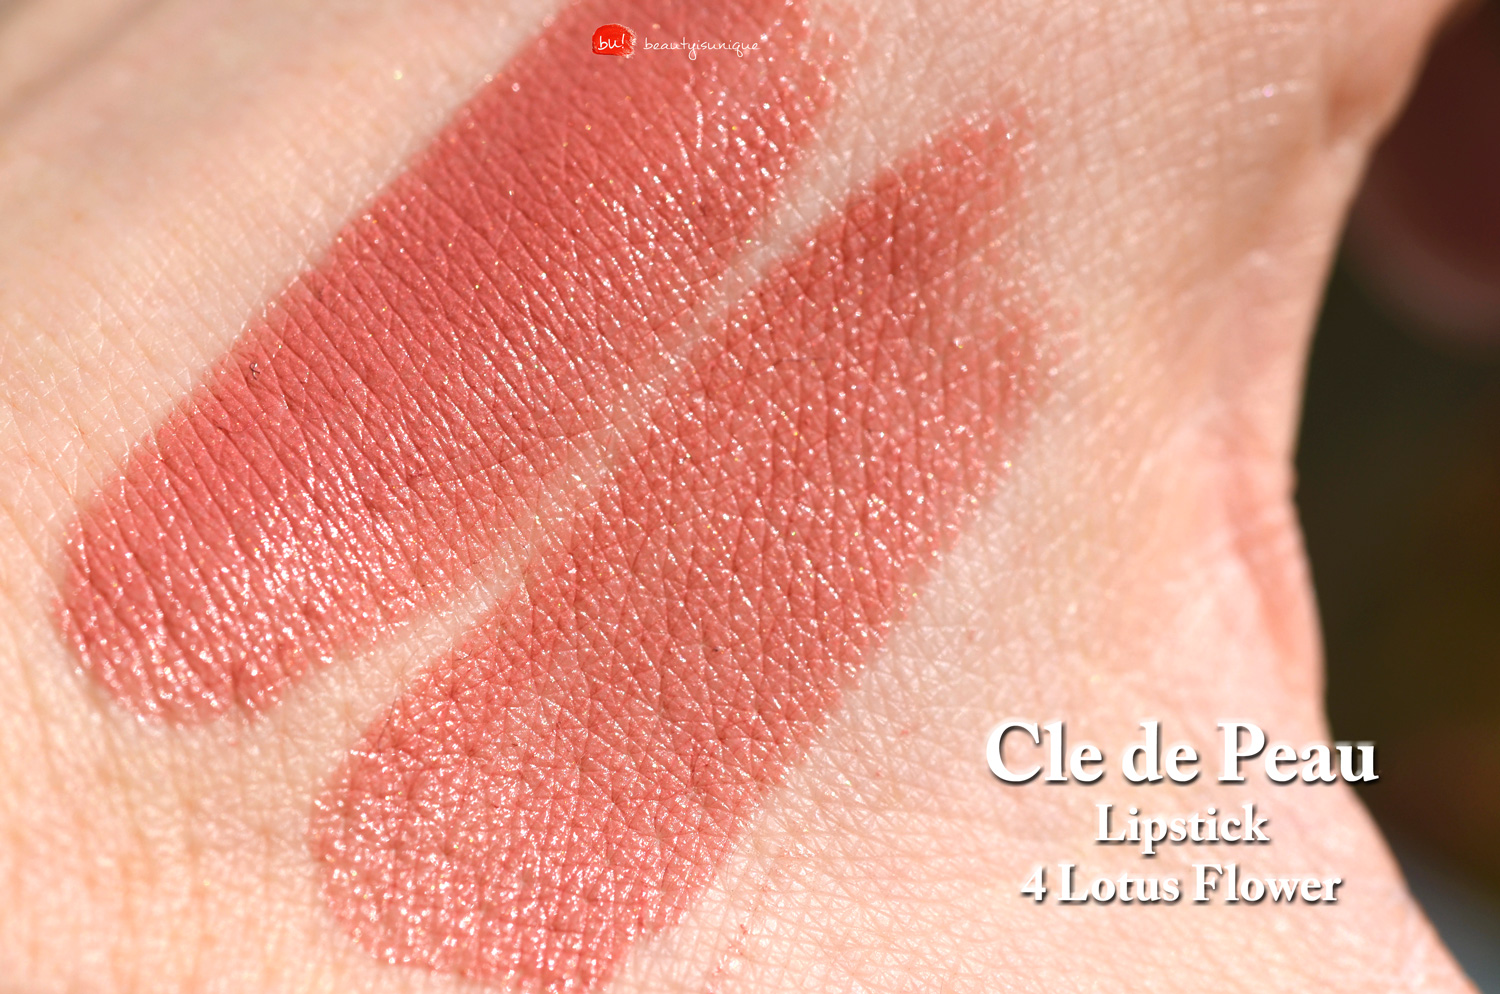 Cle-de-Peau-lipstick-lotus-flower-swatches